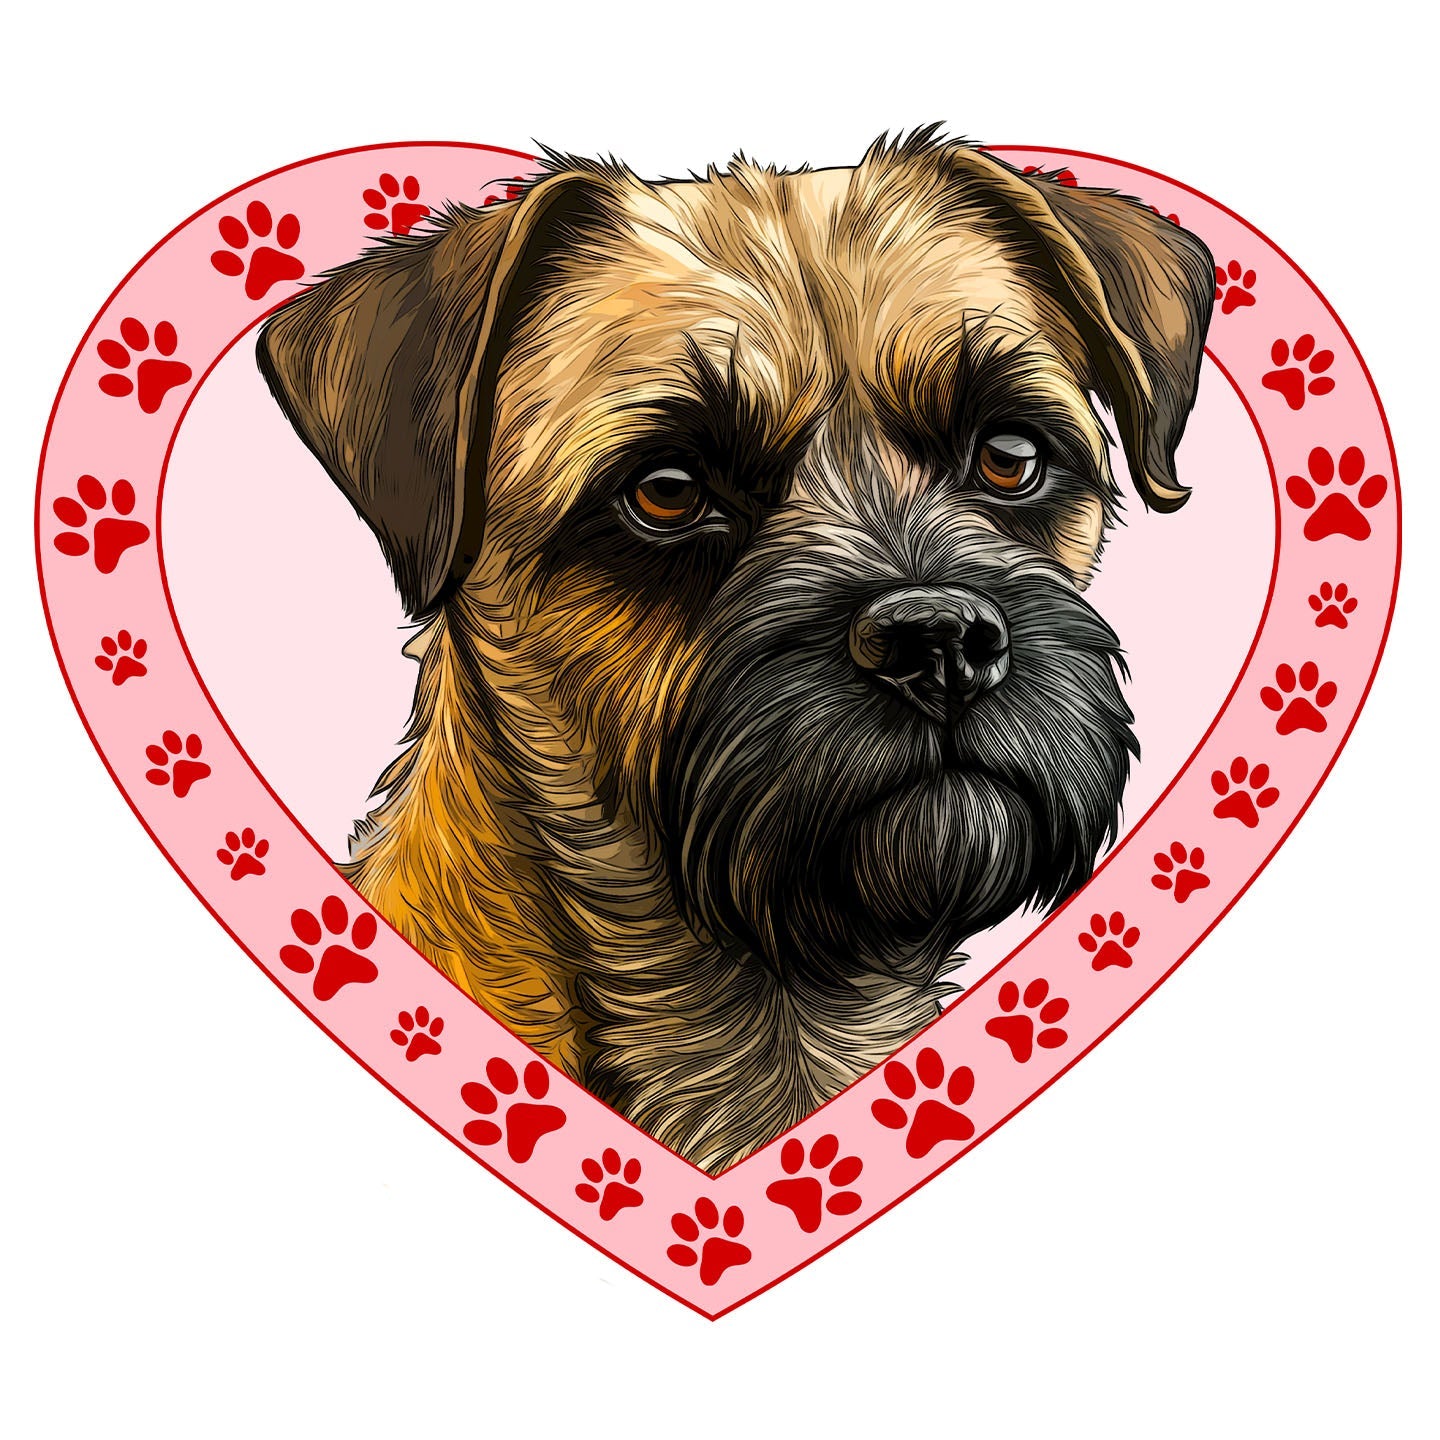 Border Terrier Illustration In Heart - Adult Unisex T-Shirt